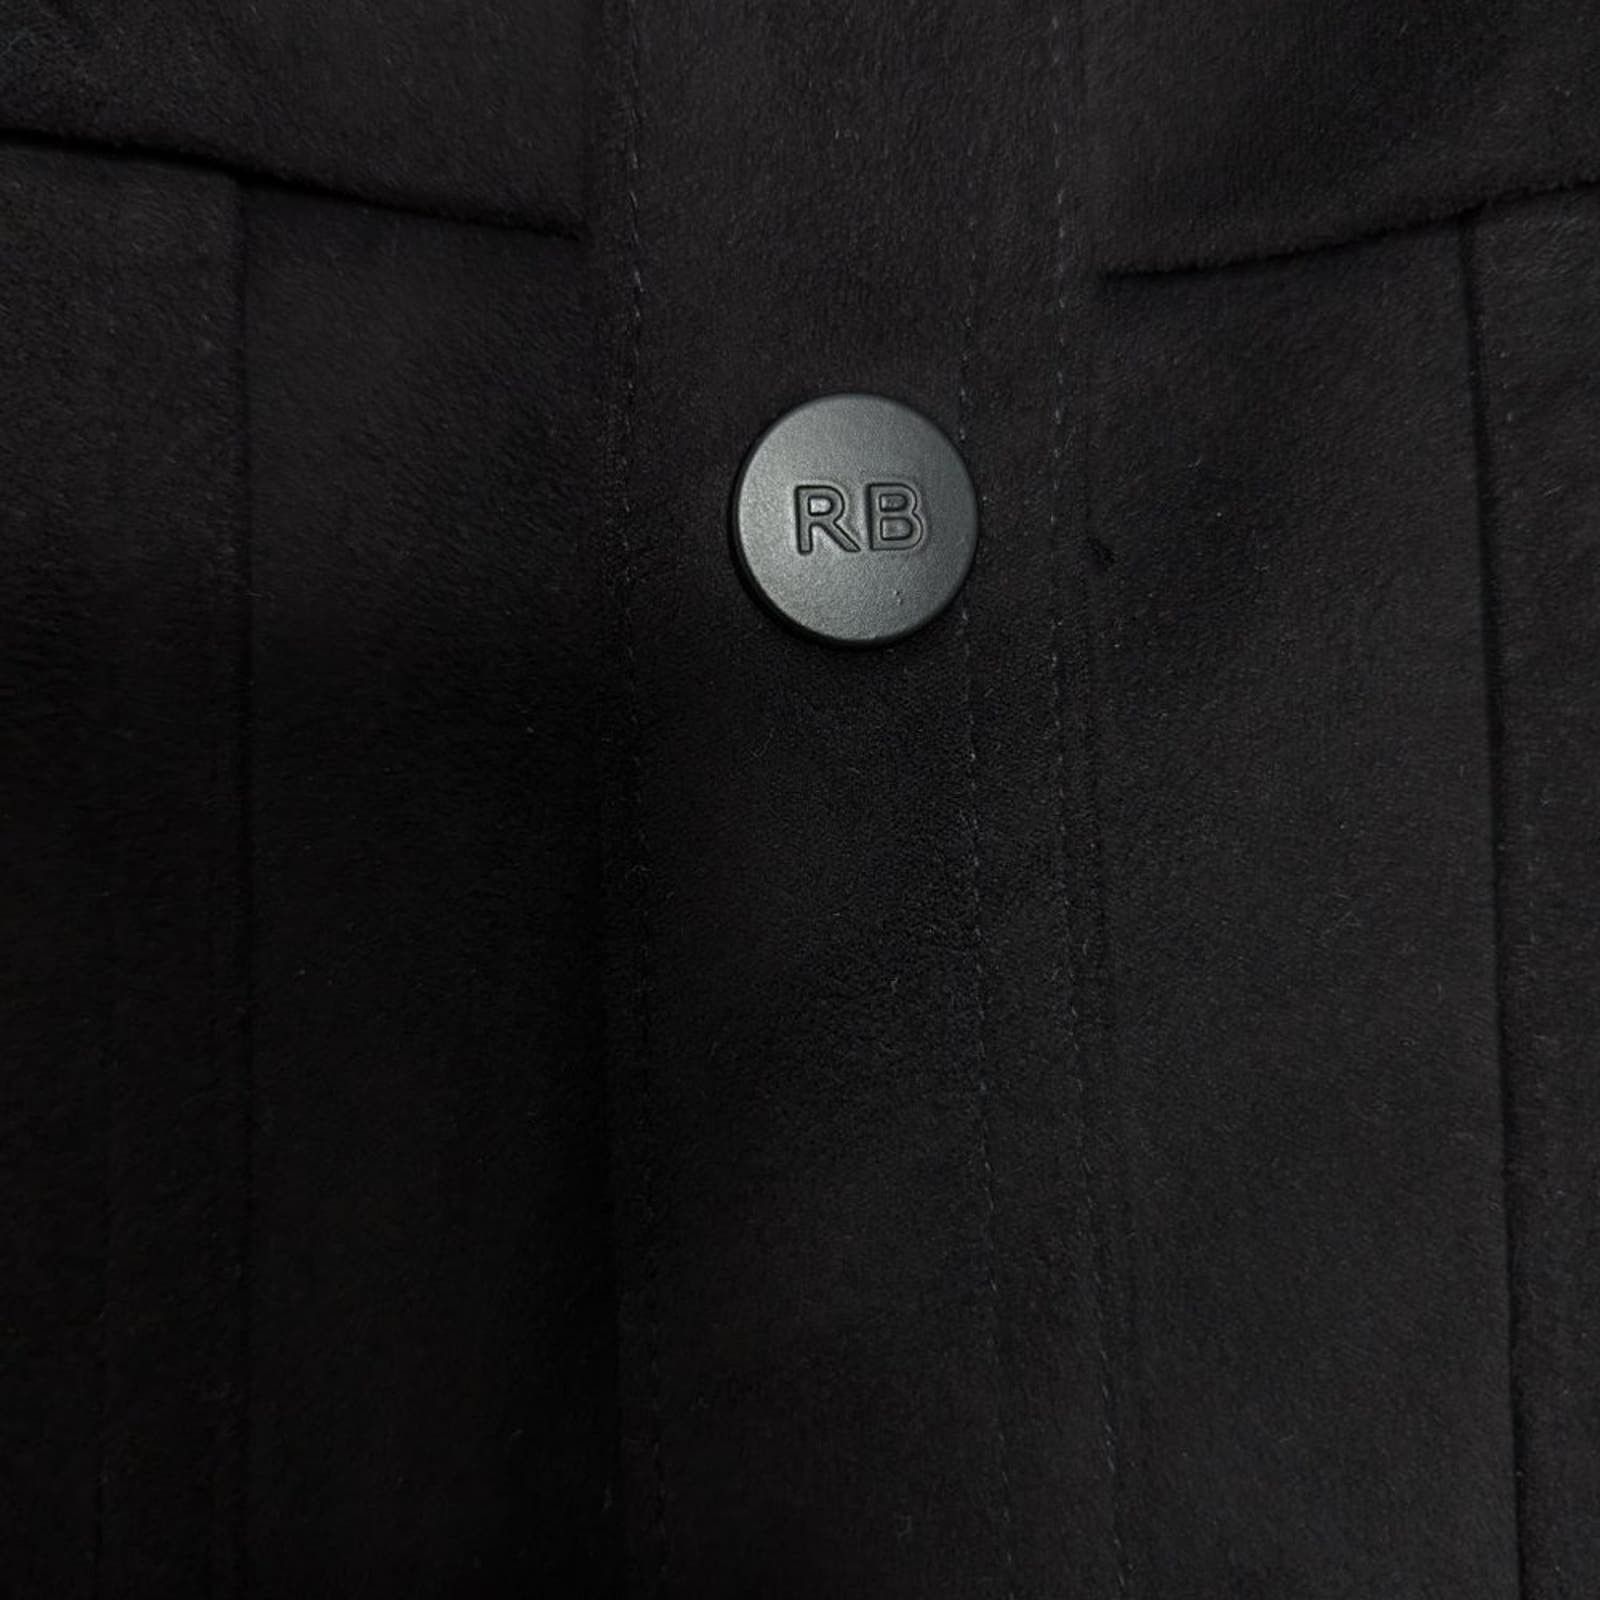 Robert Barakett Robert Barakett Black Renoir Denim Style Jacket Faux Suede S Size US S / EU 44-46 / 1 - 7 Thumbnail